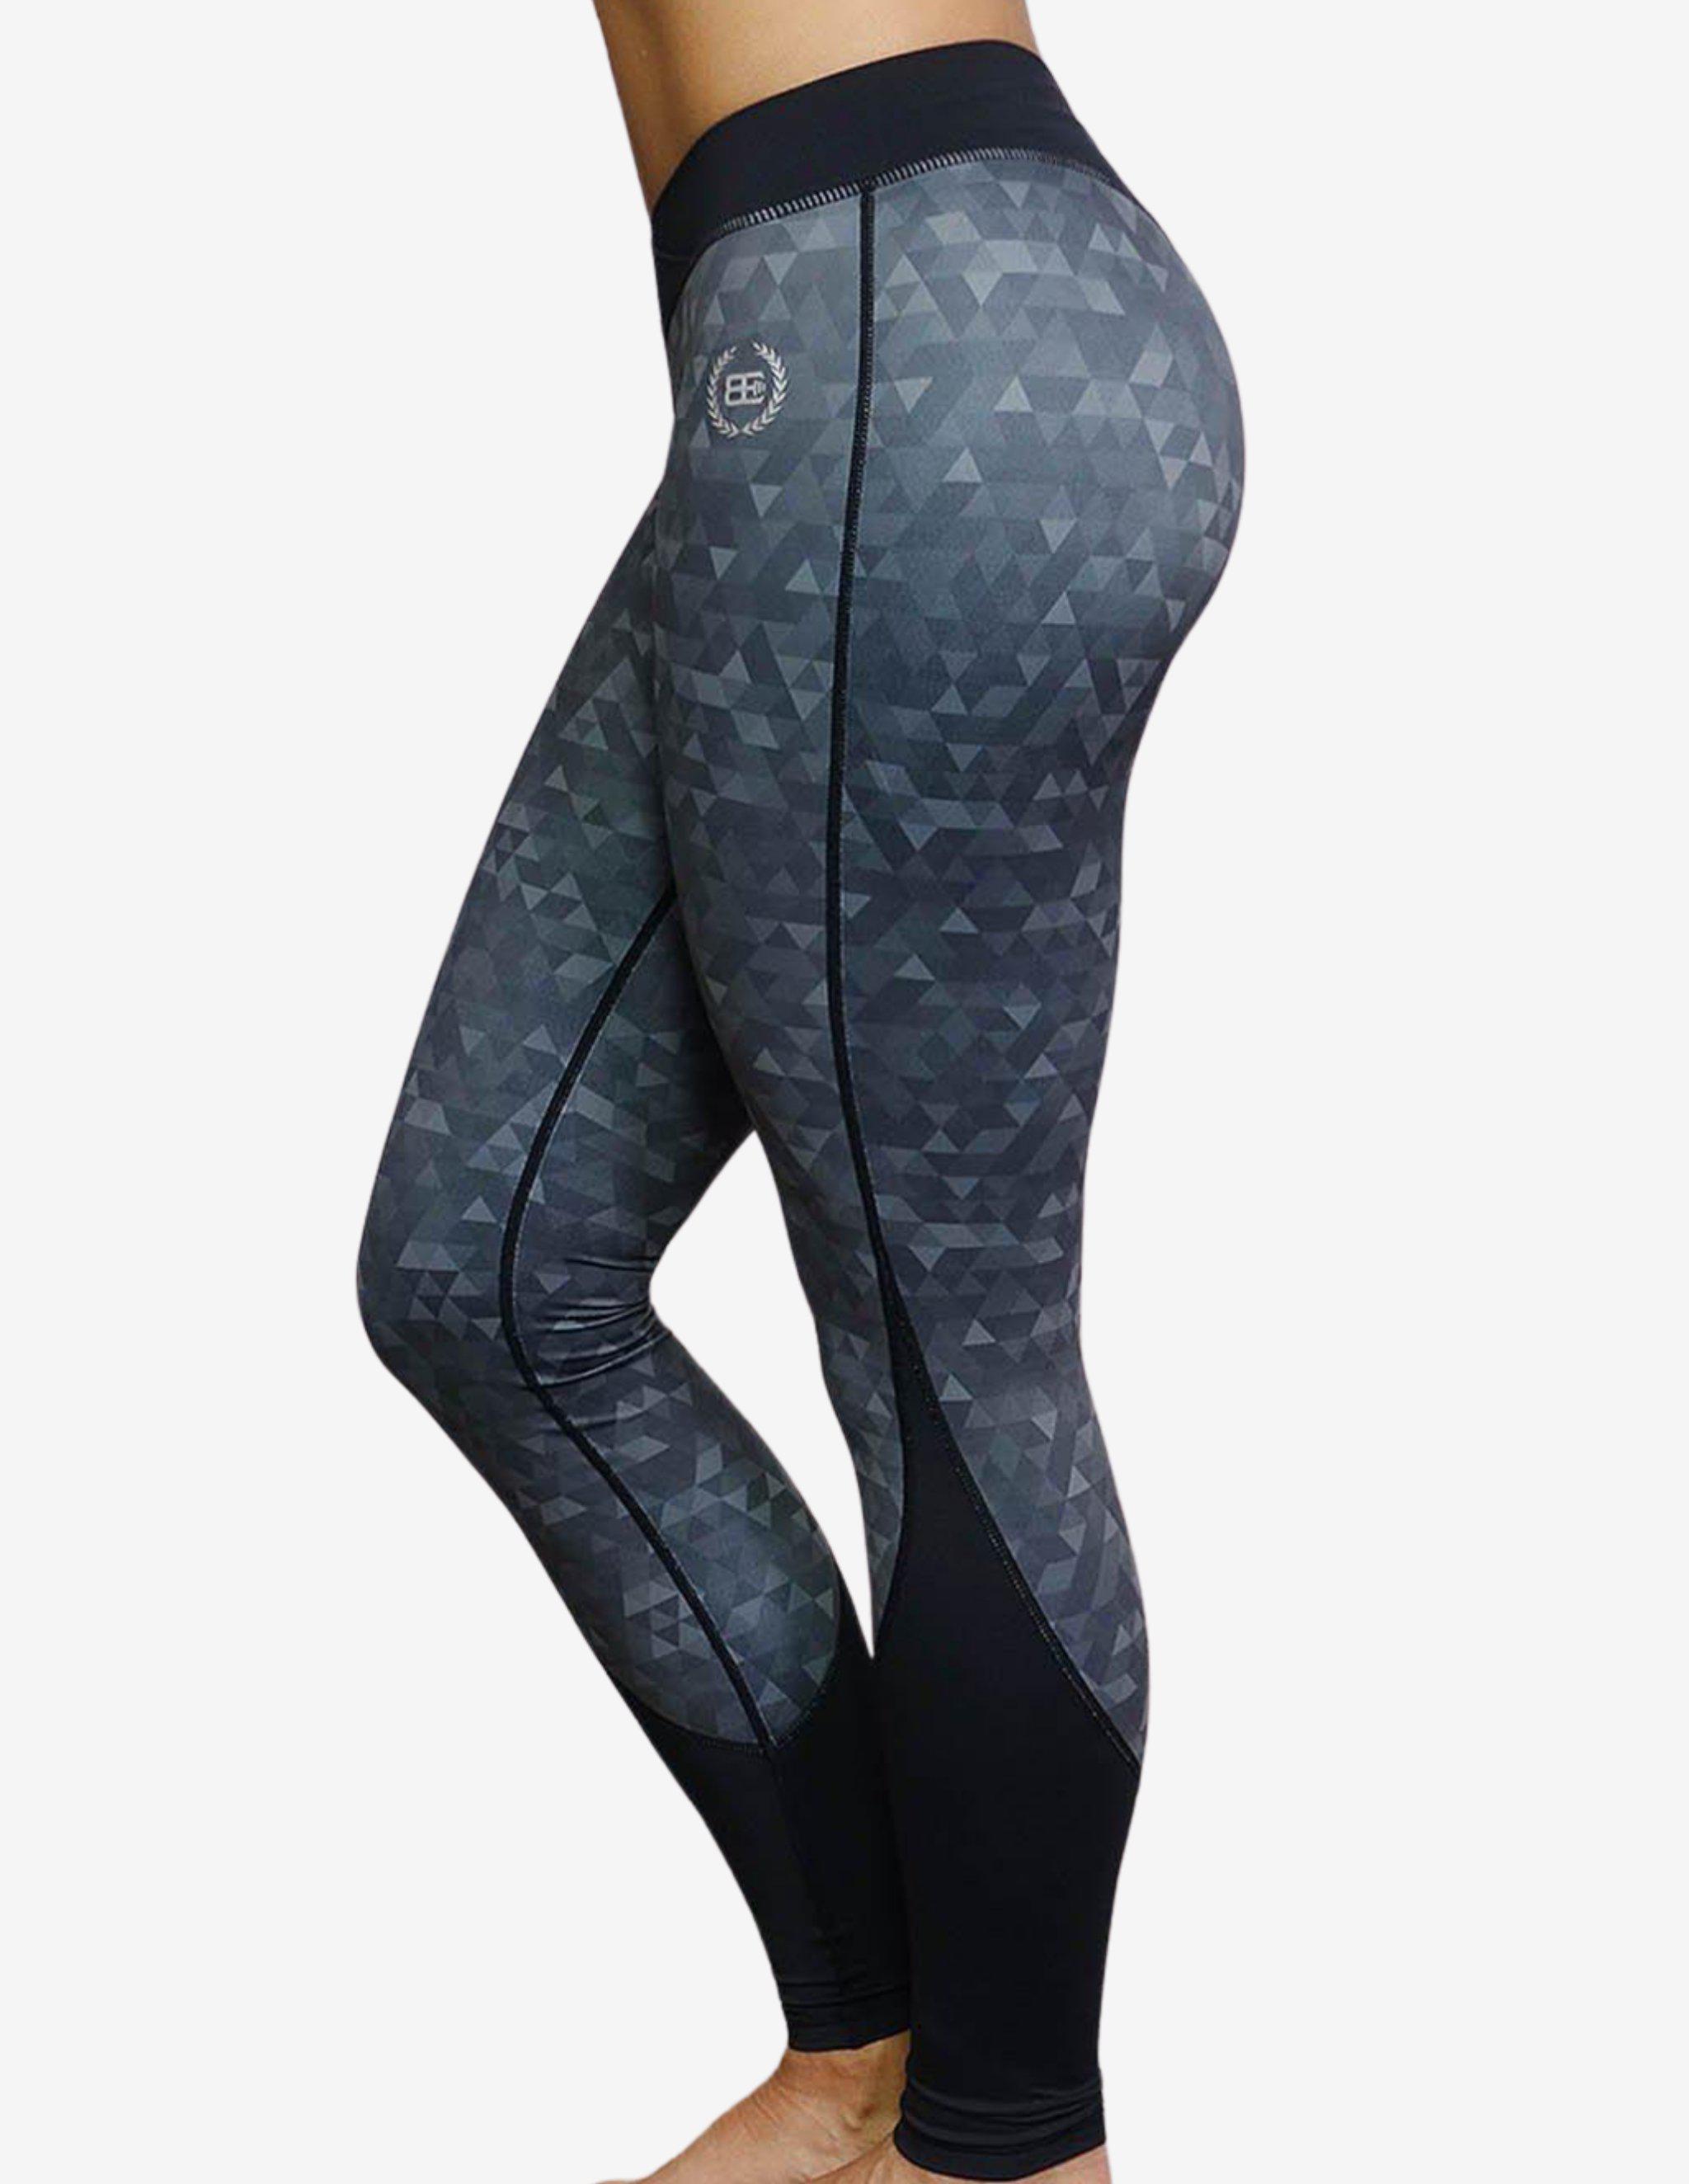 ATHENA Geometric leggings – Black/Grey-Leggings-Body Engineers-Guru Muscle